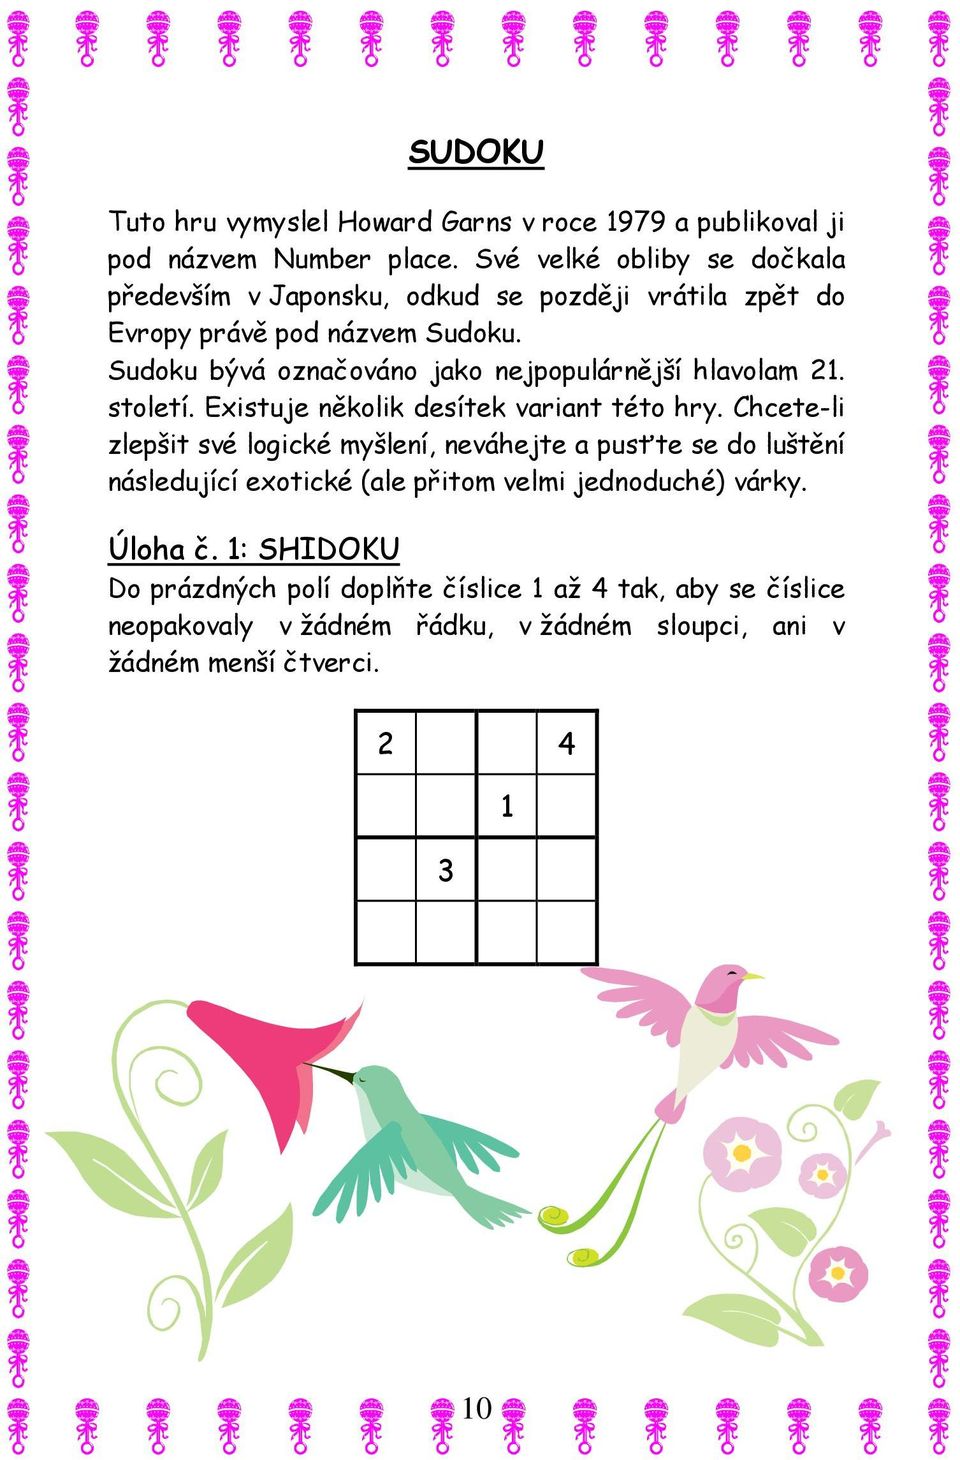 Sudoku bývá označováno jako nejpopulárnější hlavolam 21. století. Existuje několik desítek variant této hry.